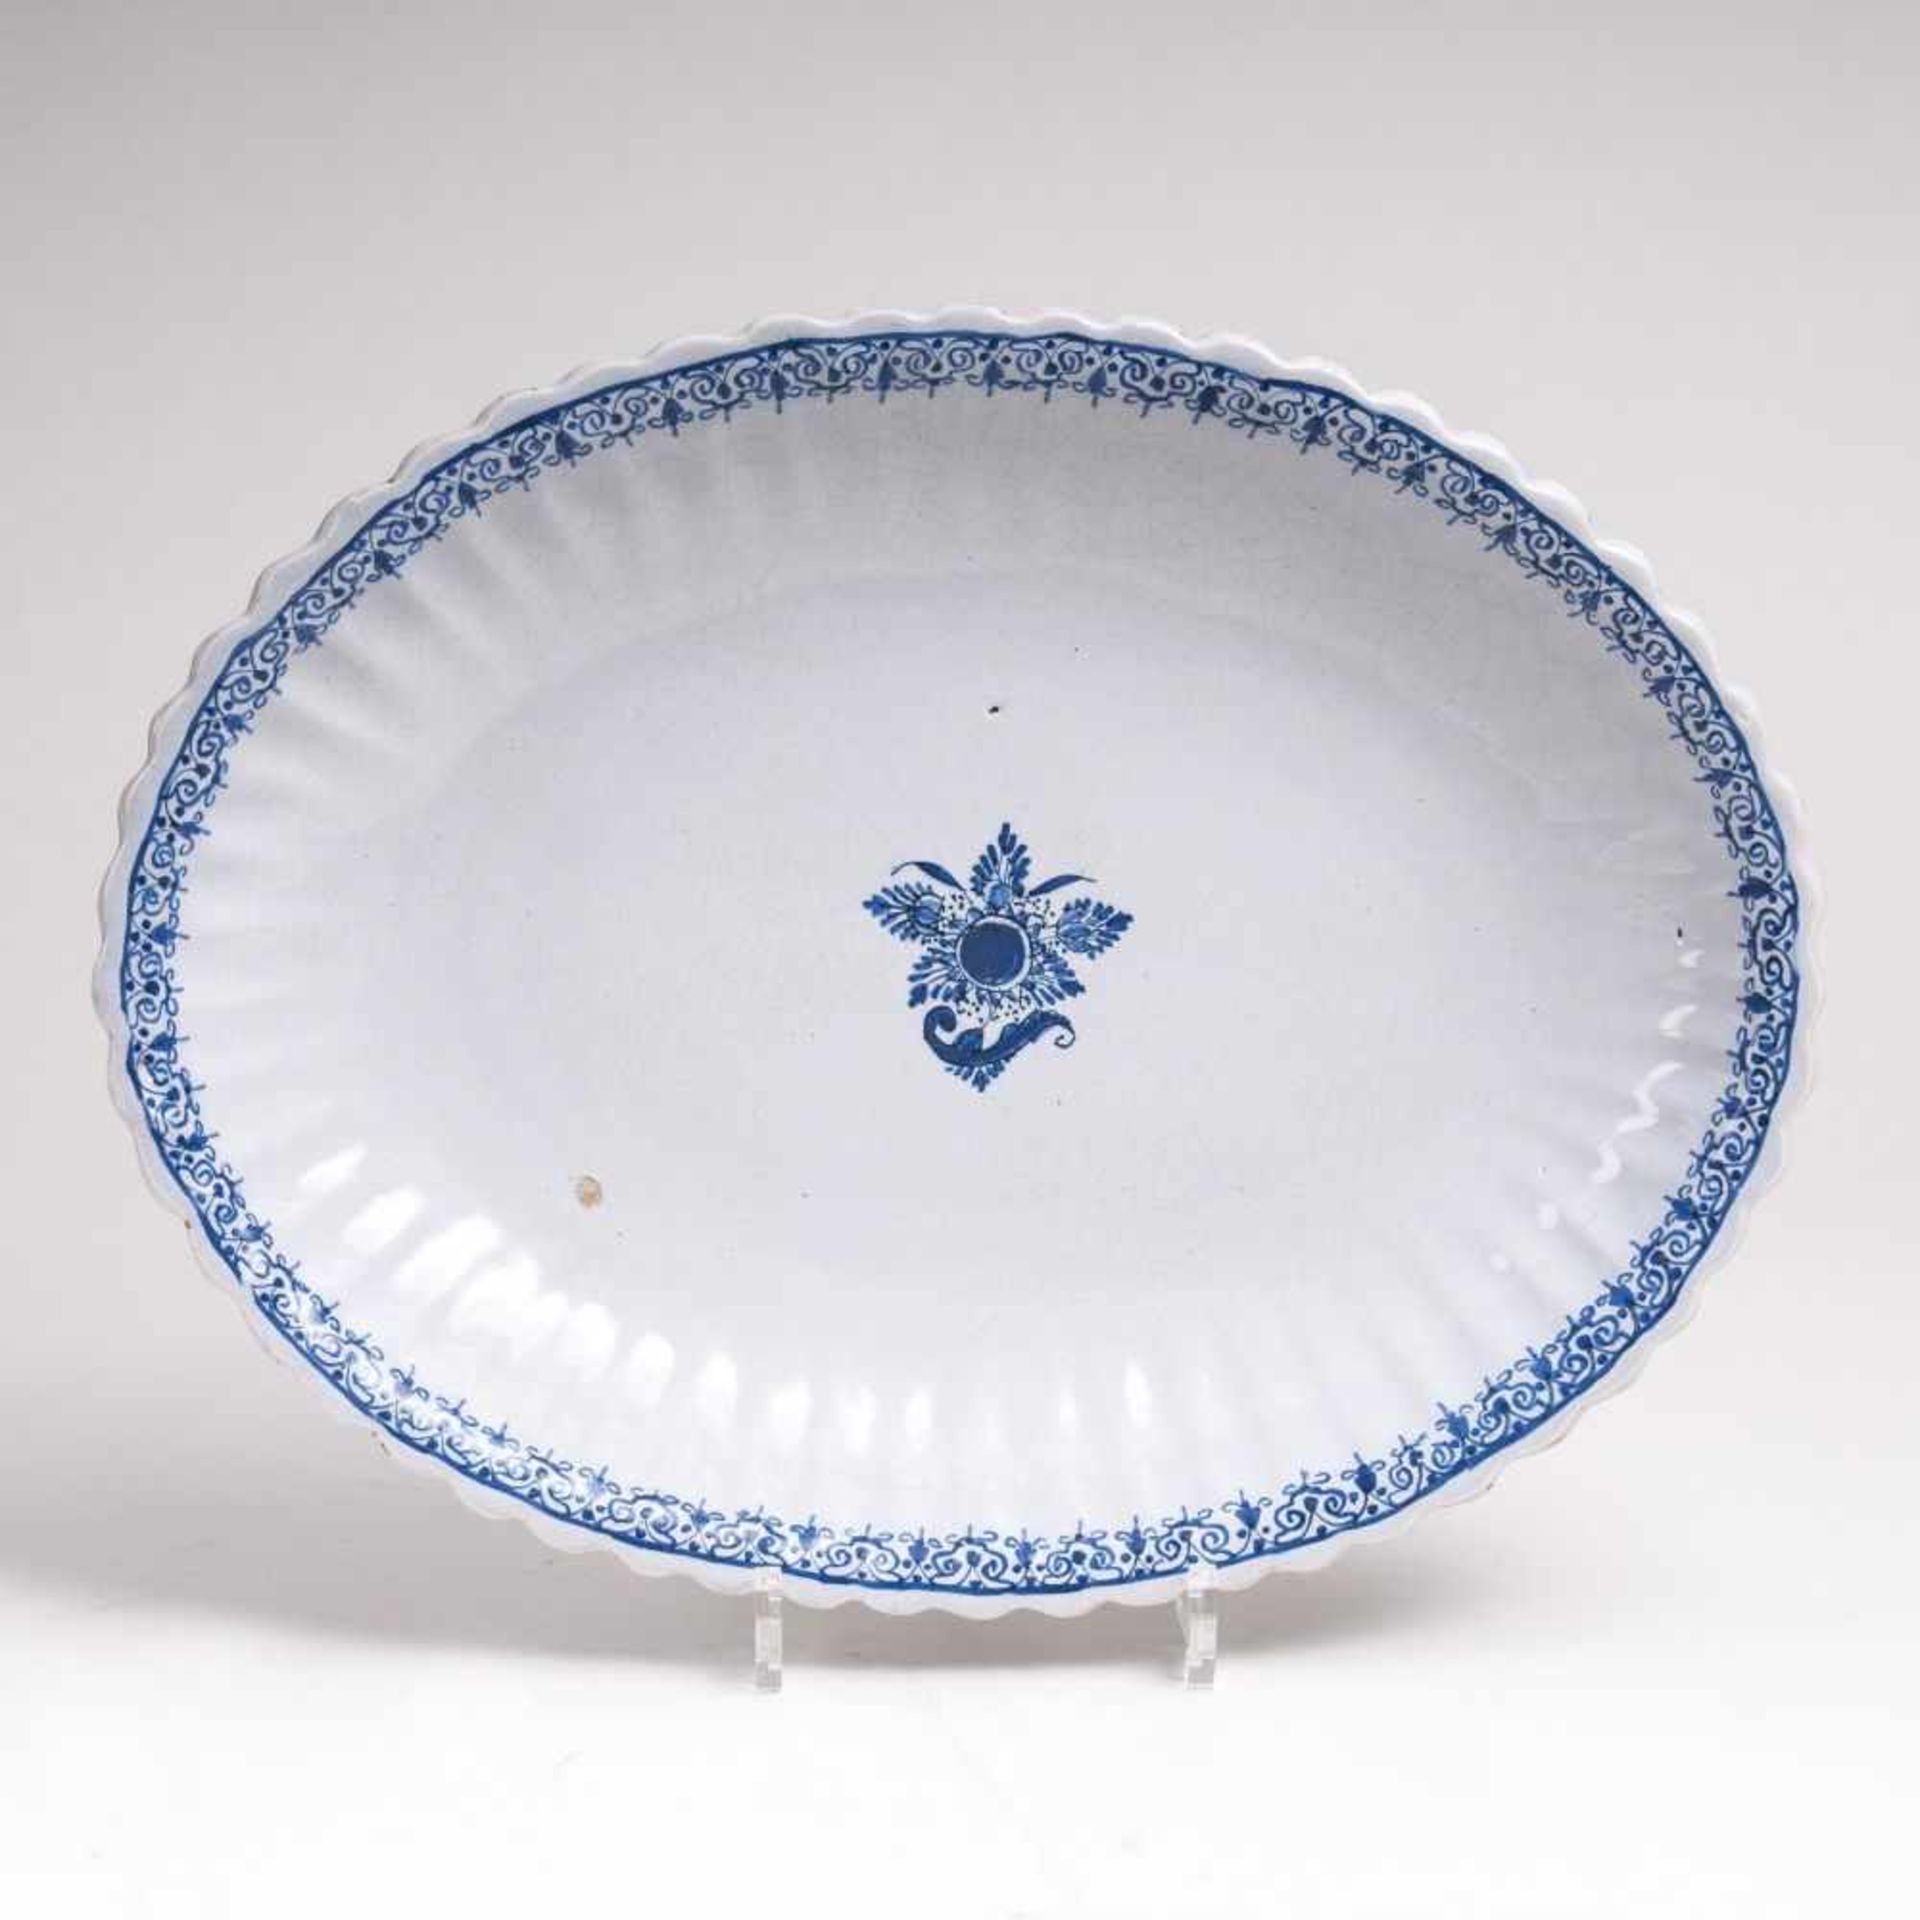 Ovale Fayence-Platte mit BlaumalereiWohl Durlach, 18. Jh. Weiß glasiert. U-glasurblauer Dekor: